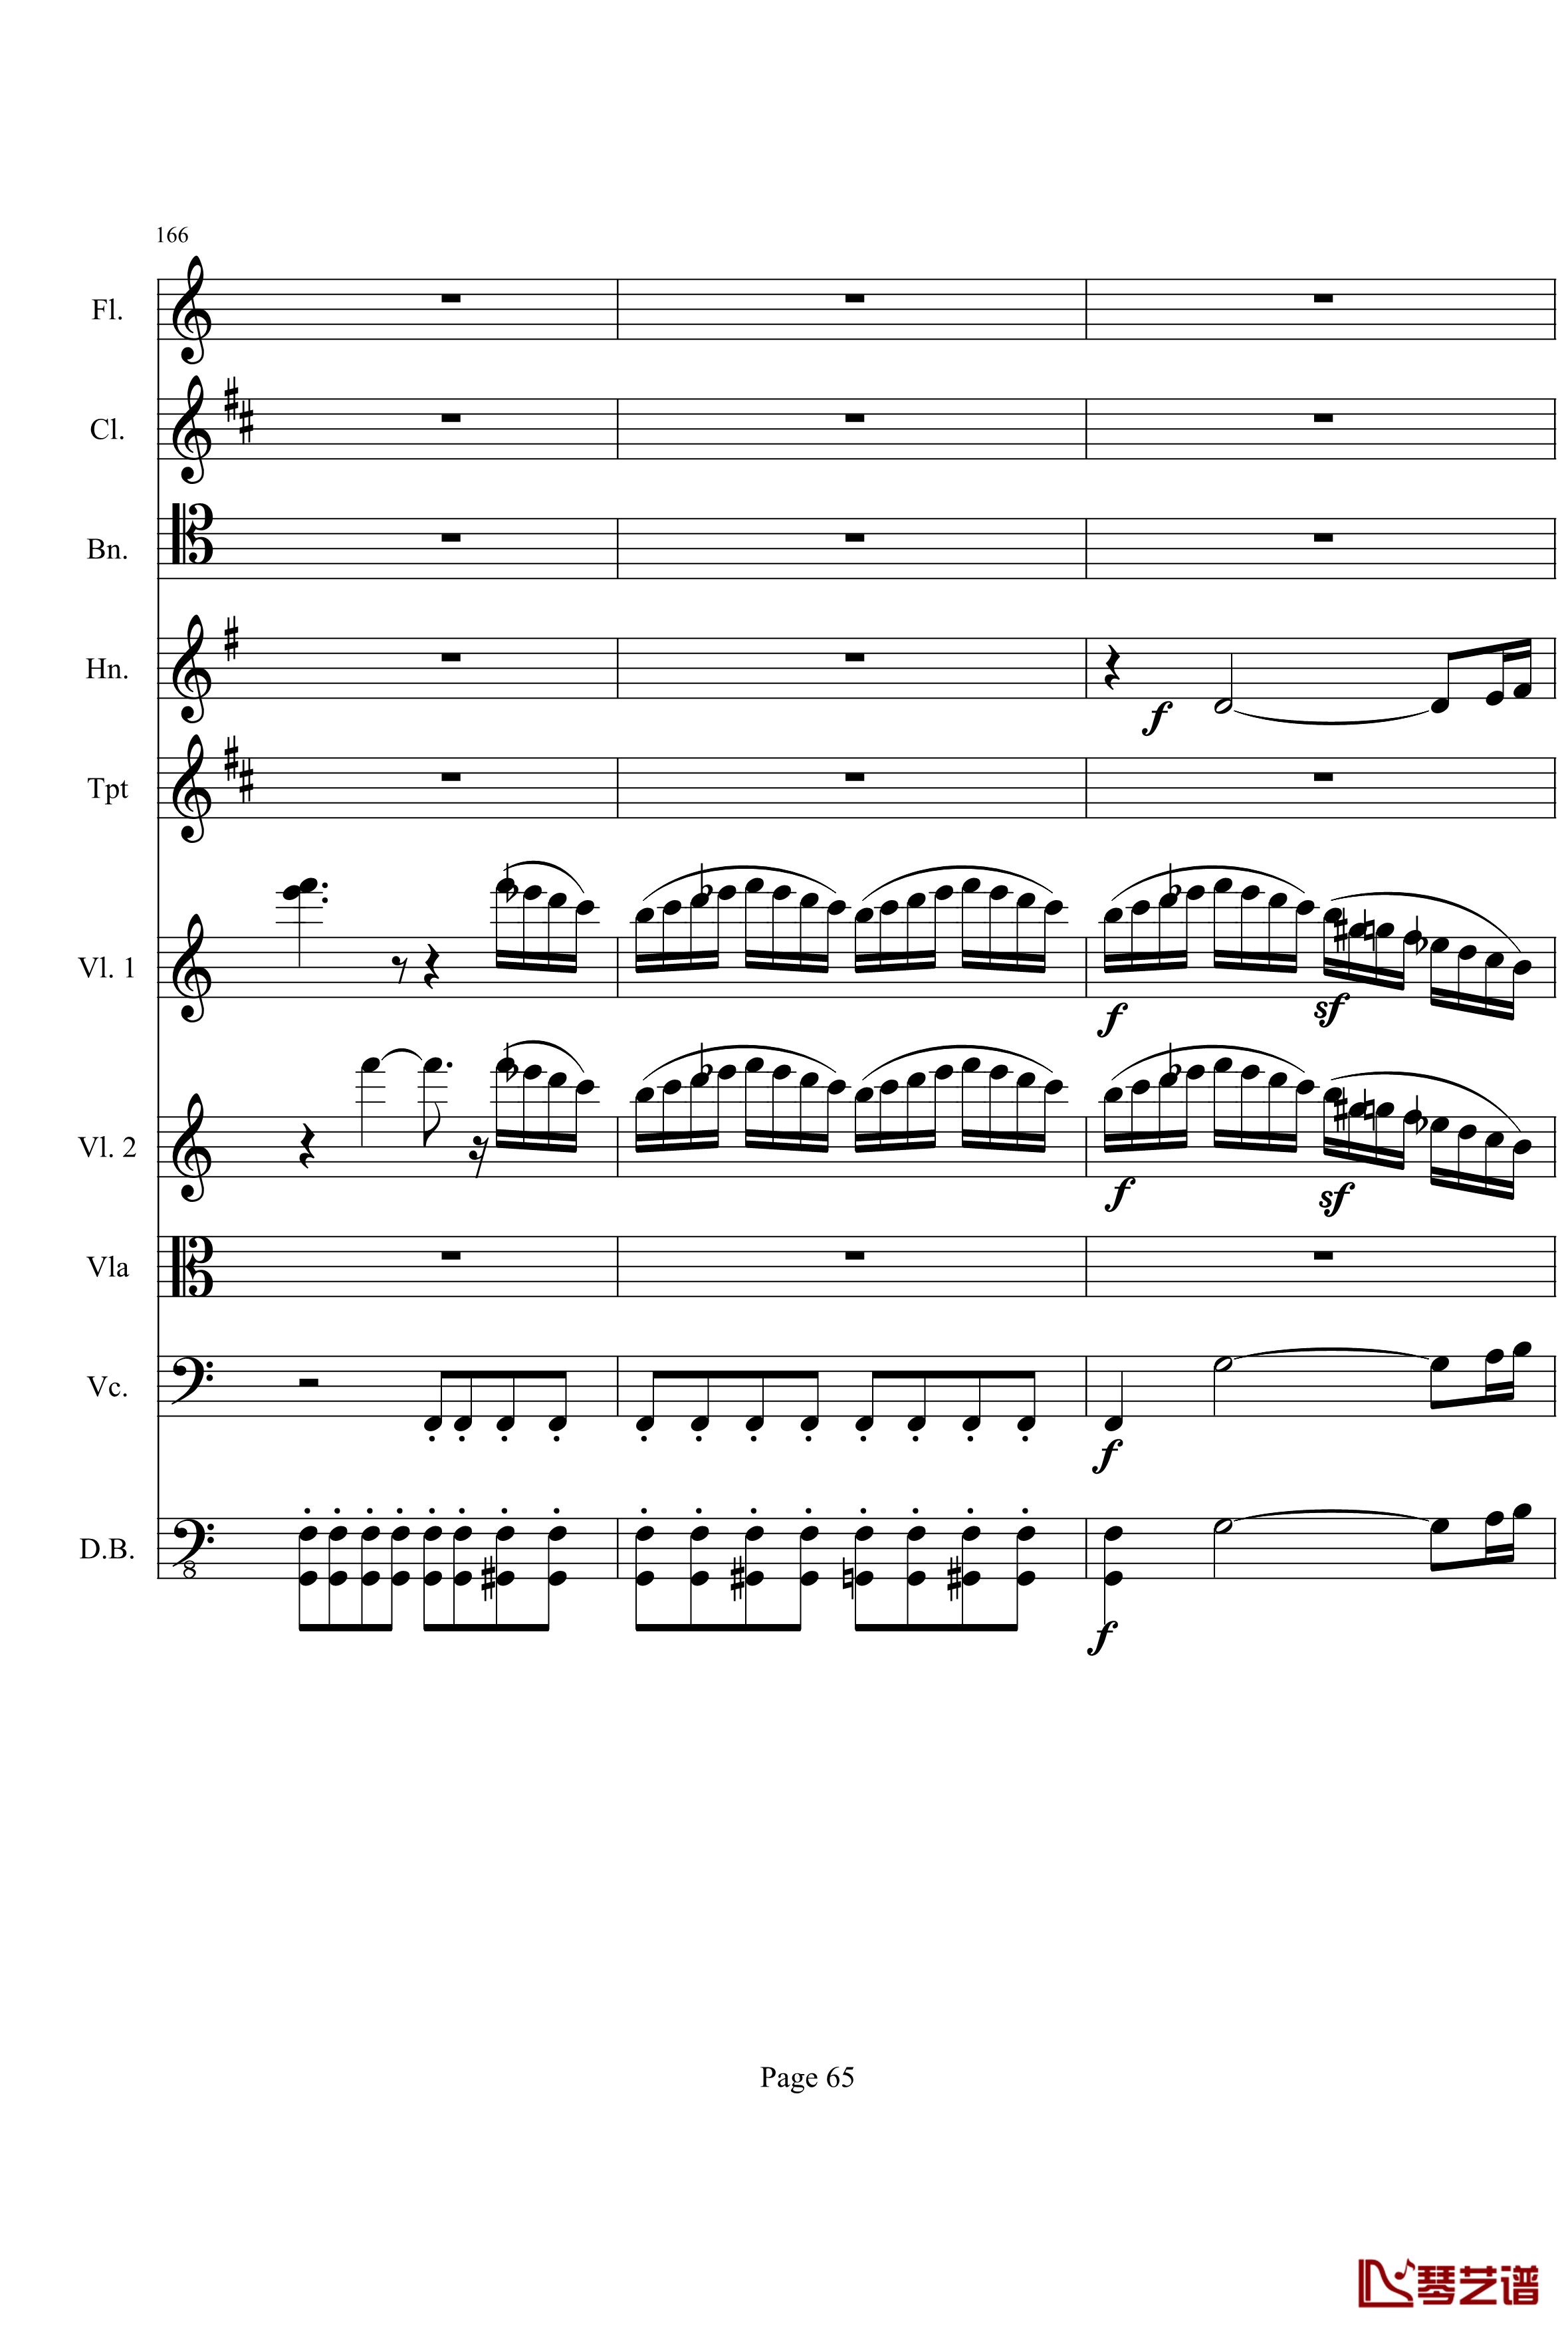 奏鸣曲之交响钢琴谱-第21-Ⅰ-贝多芬-beethoven65